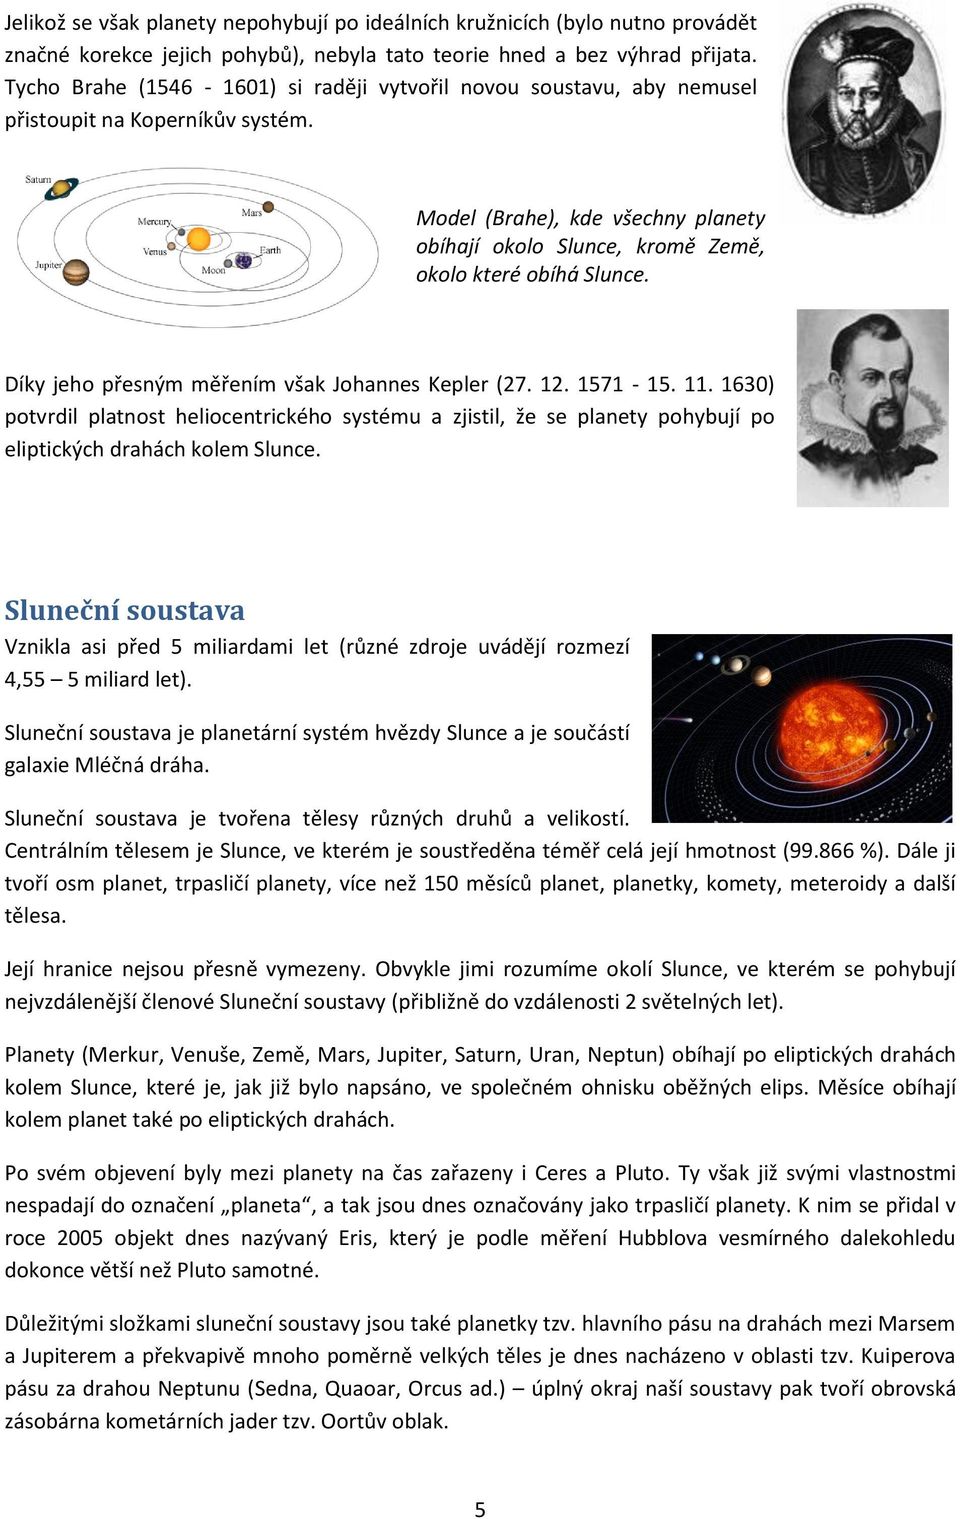 Díky jeho přesným měřením však Johannes Kepler (27. 12. 1571-15. 11. 1630) potvrdil platnost heliocentrického systému a zjistil, že se planety pohybují po eliptických drahách kolem Slunce.